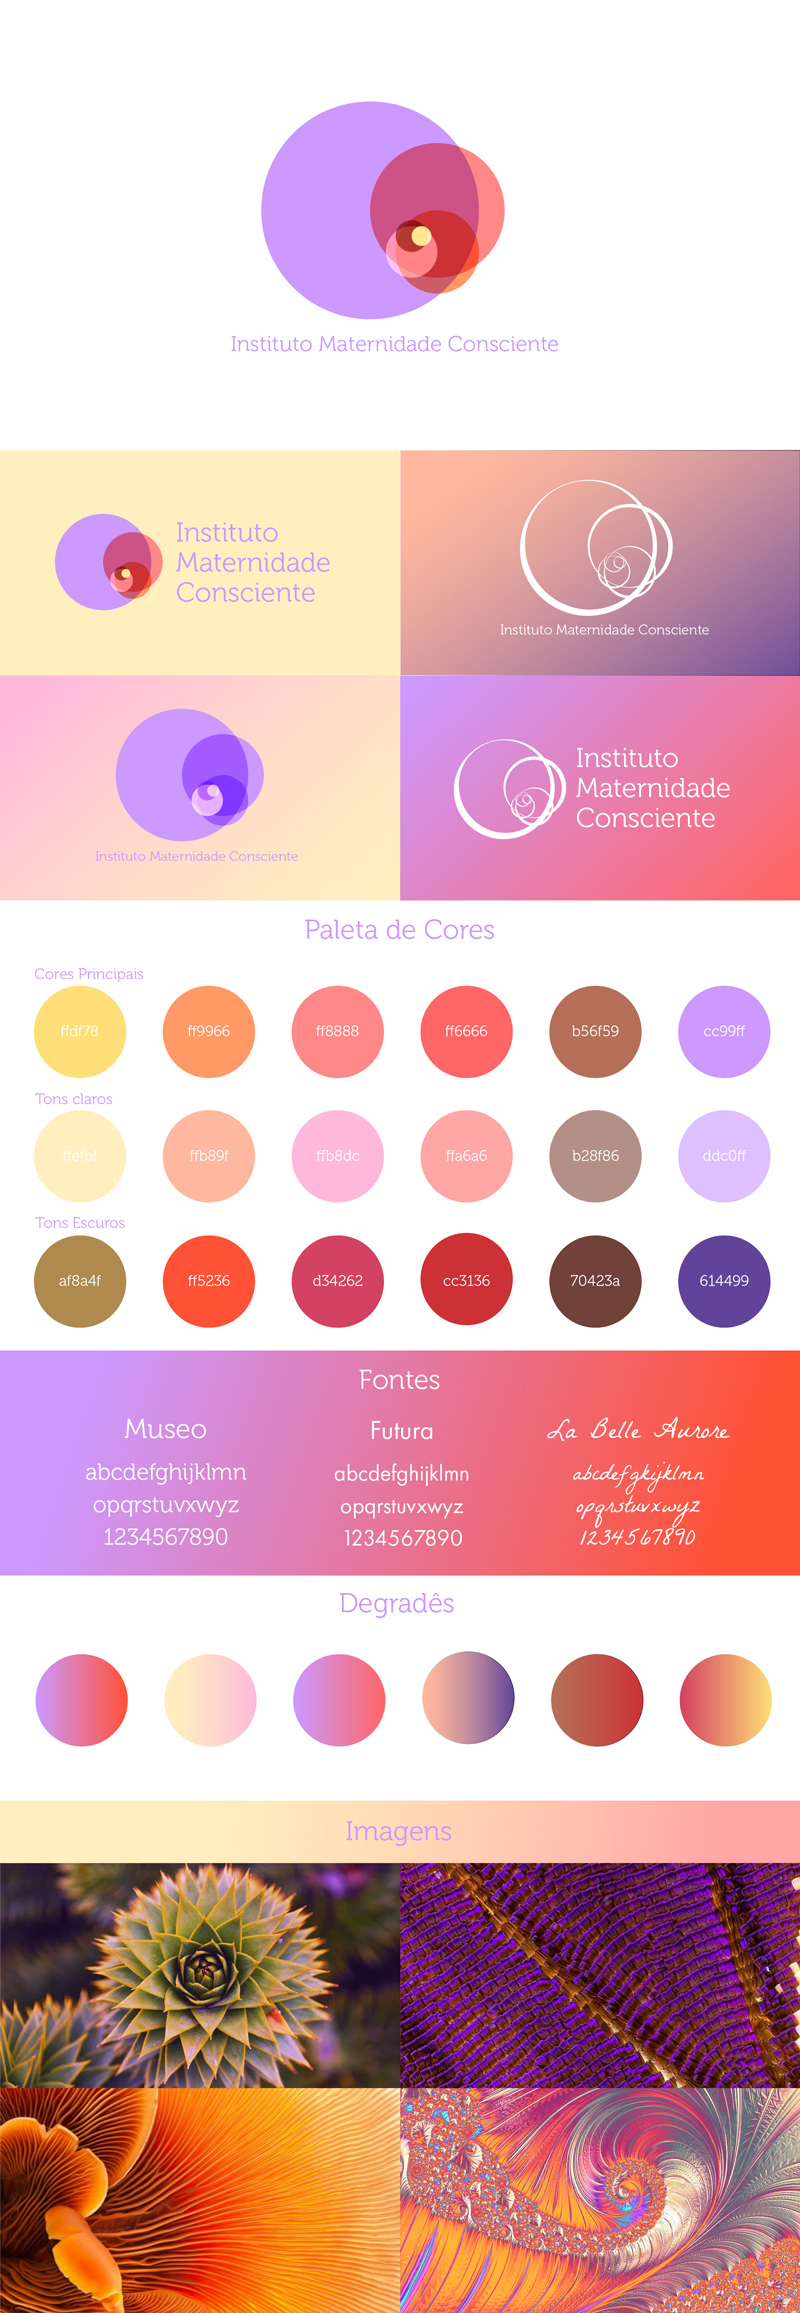 Novo plano de identidade visual do Instituto Maternidade Consciente contendo Logotipo com variações, cores, fontes, degrades e imagens de referência.